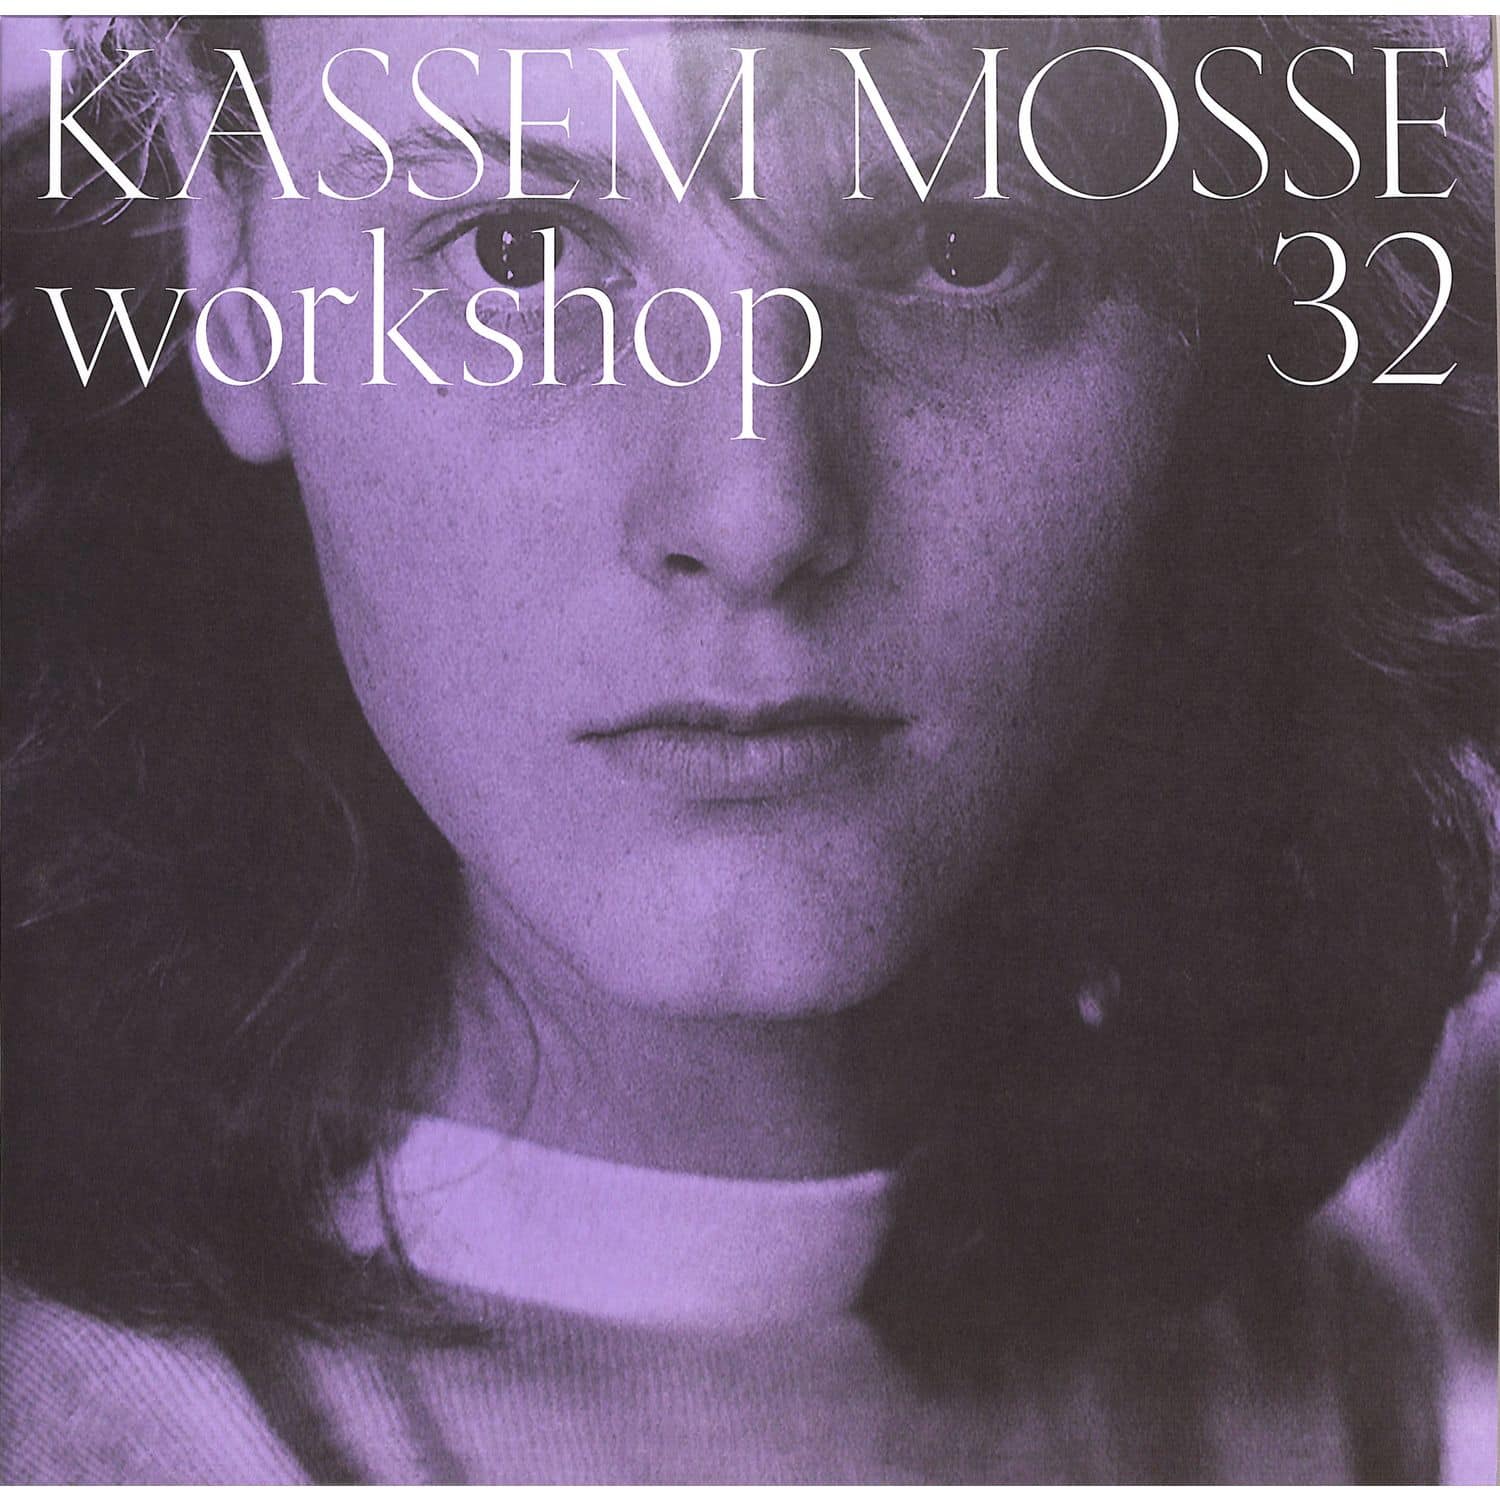 Kassem Mosse - WORKSHOP 32 